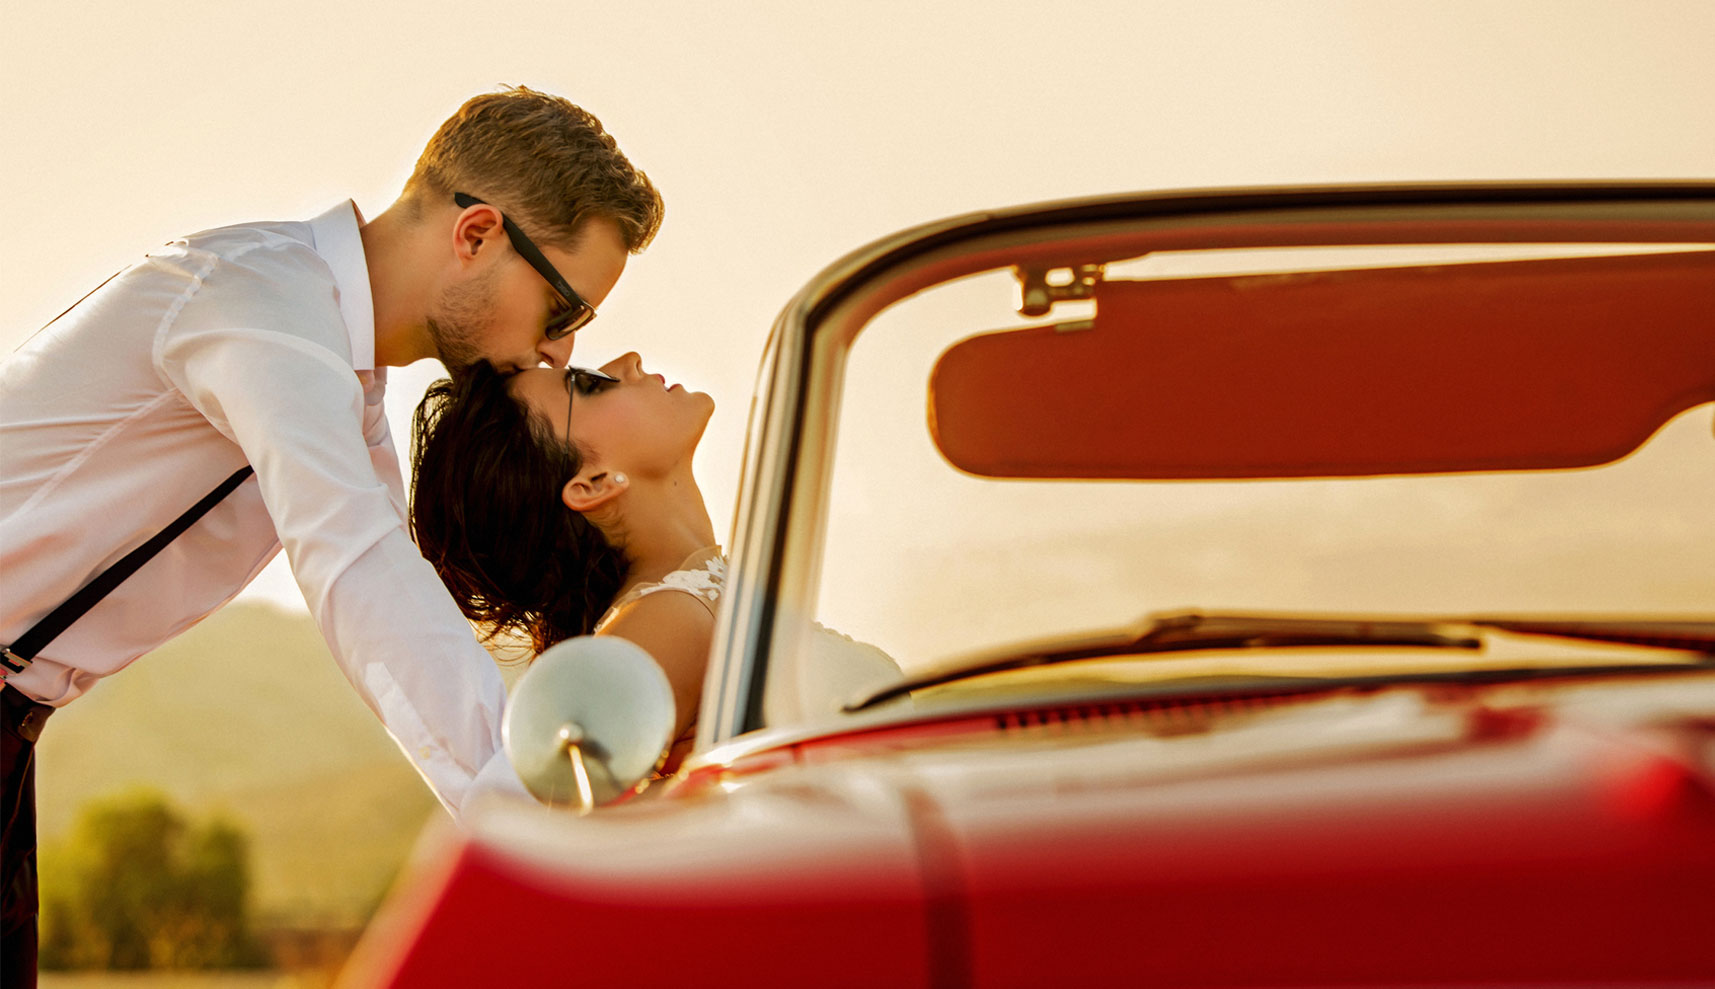 El novio dándole un beso en la frente dónde ella esta apoyada en el coche.